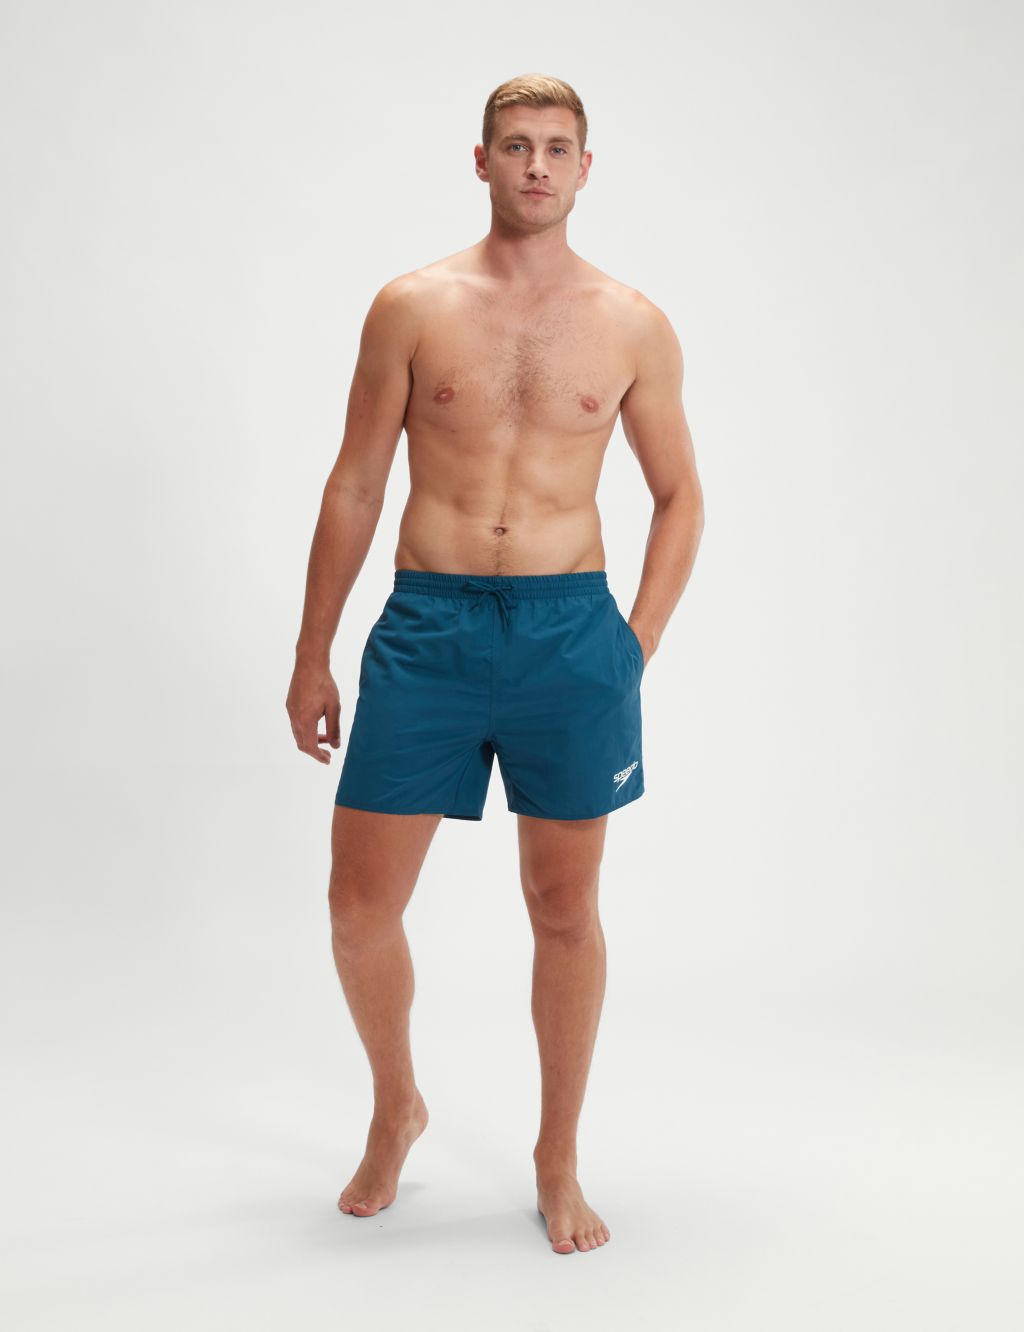 Pocketed Swim Shorts